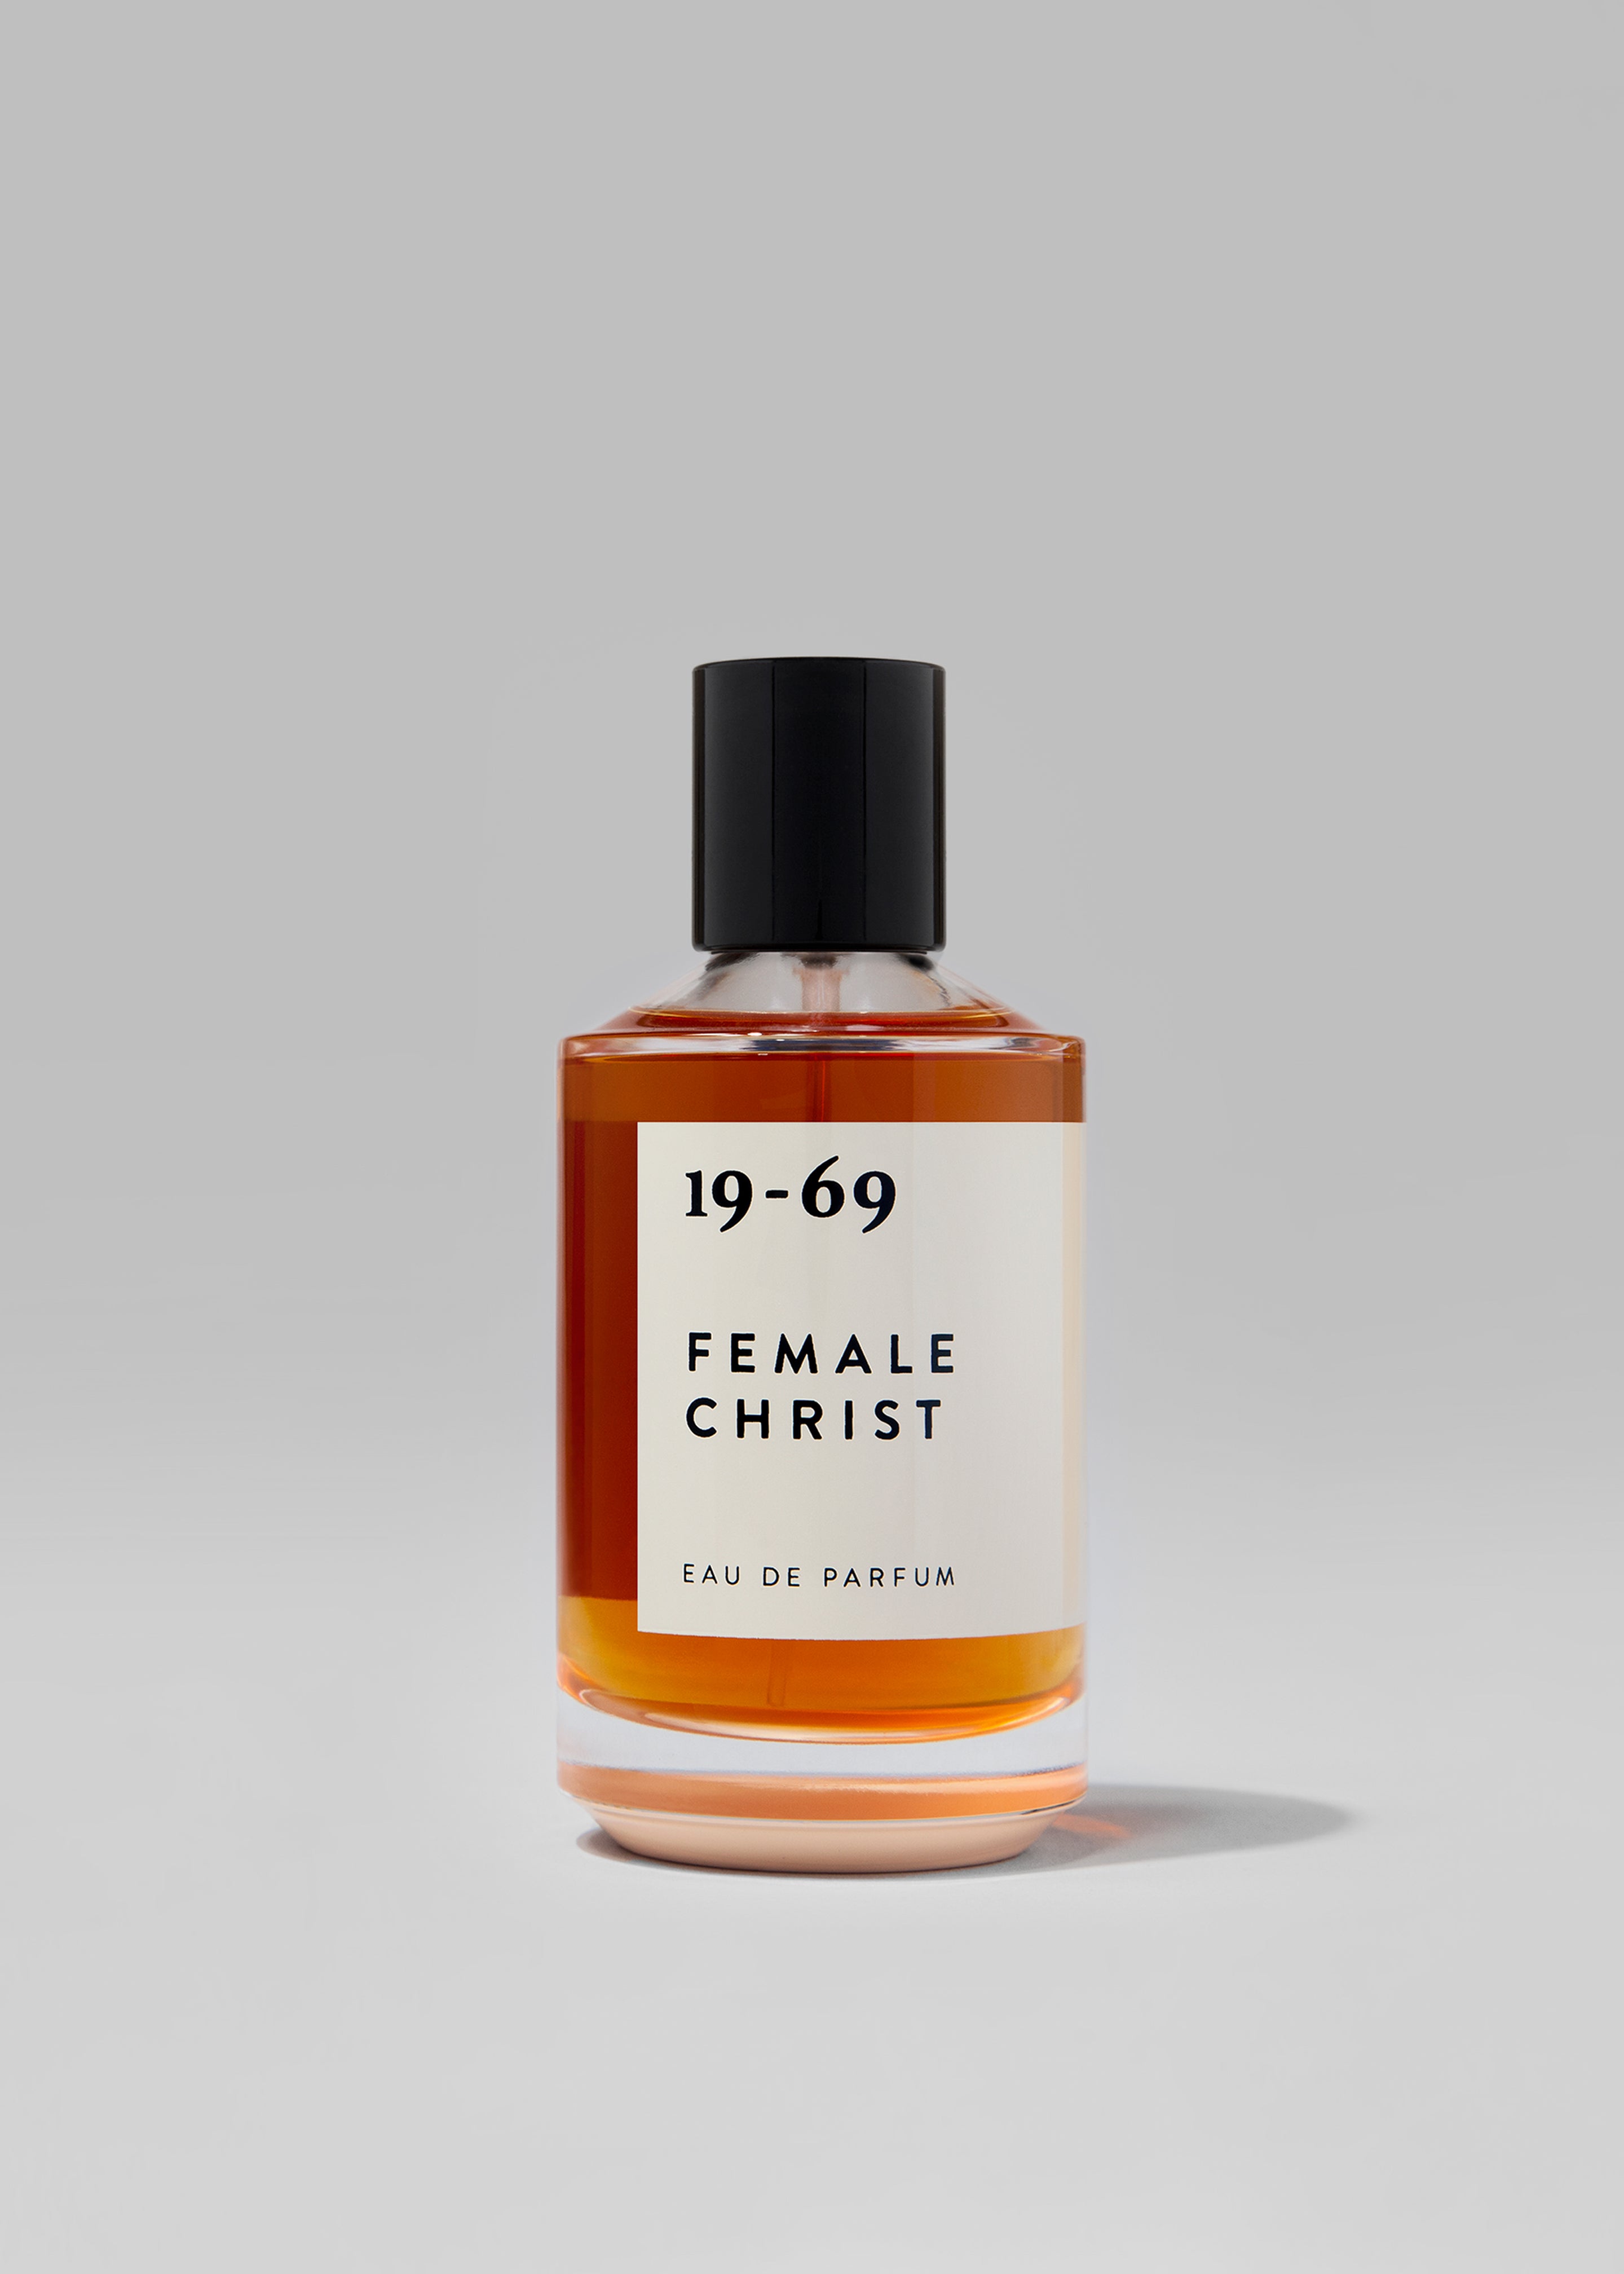 19-69 Female Christ Eau de Parfum - 1